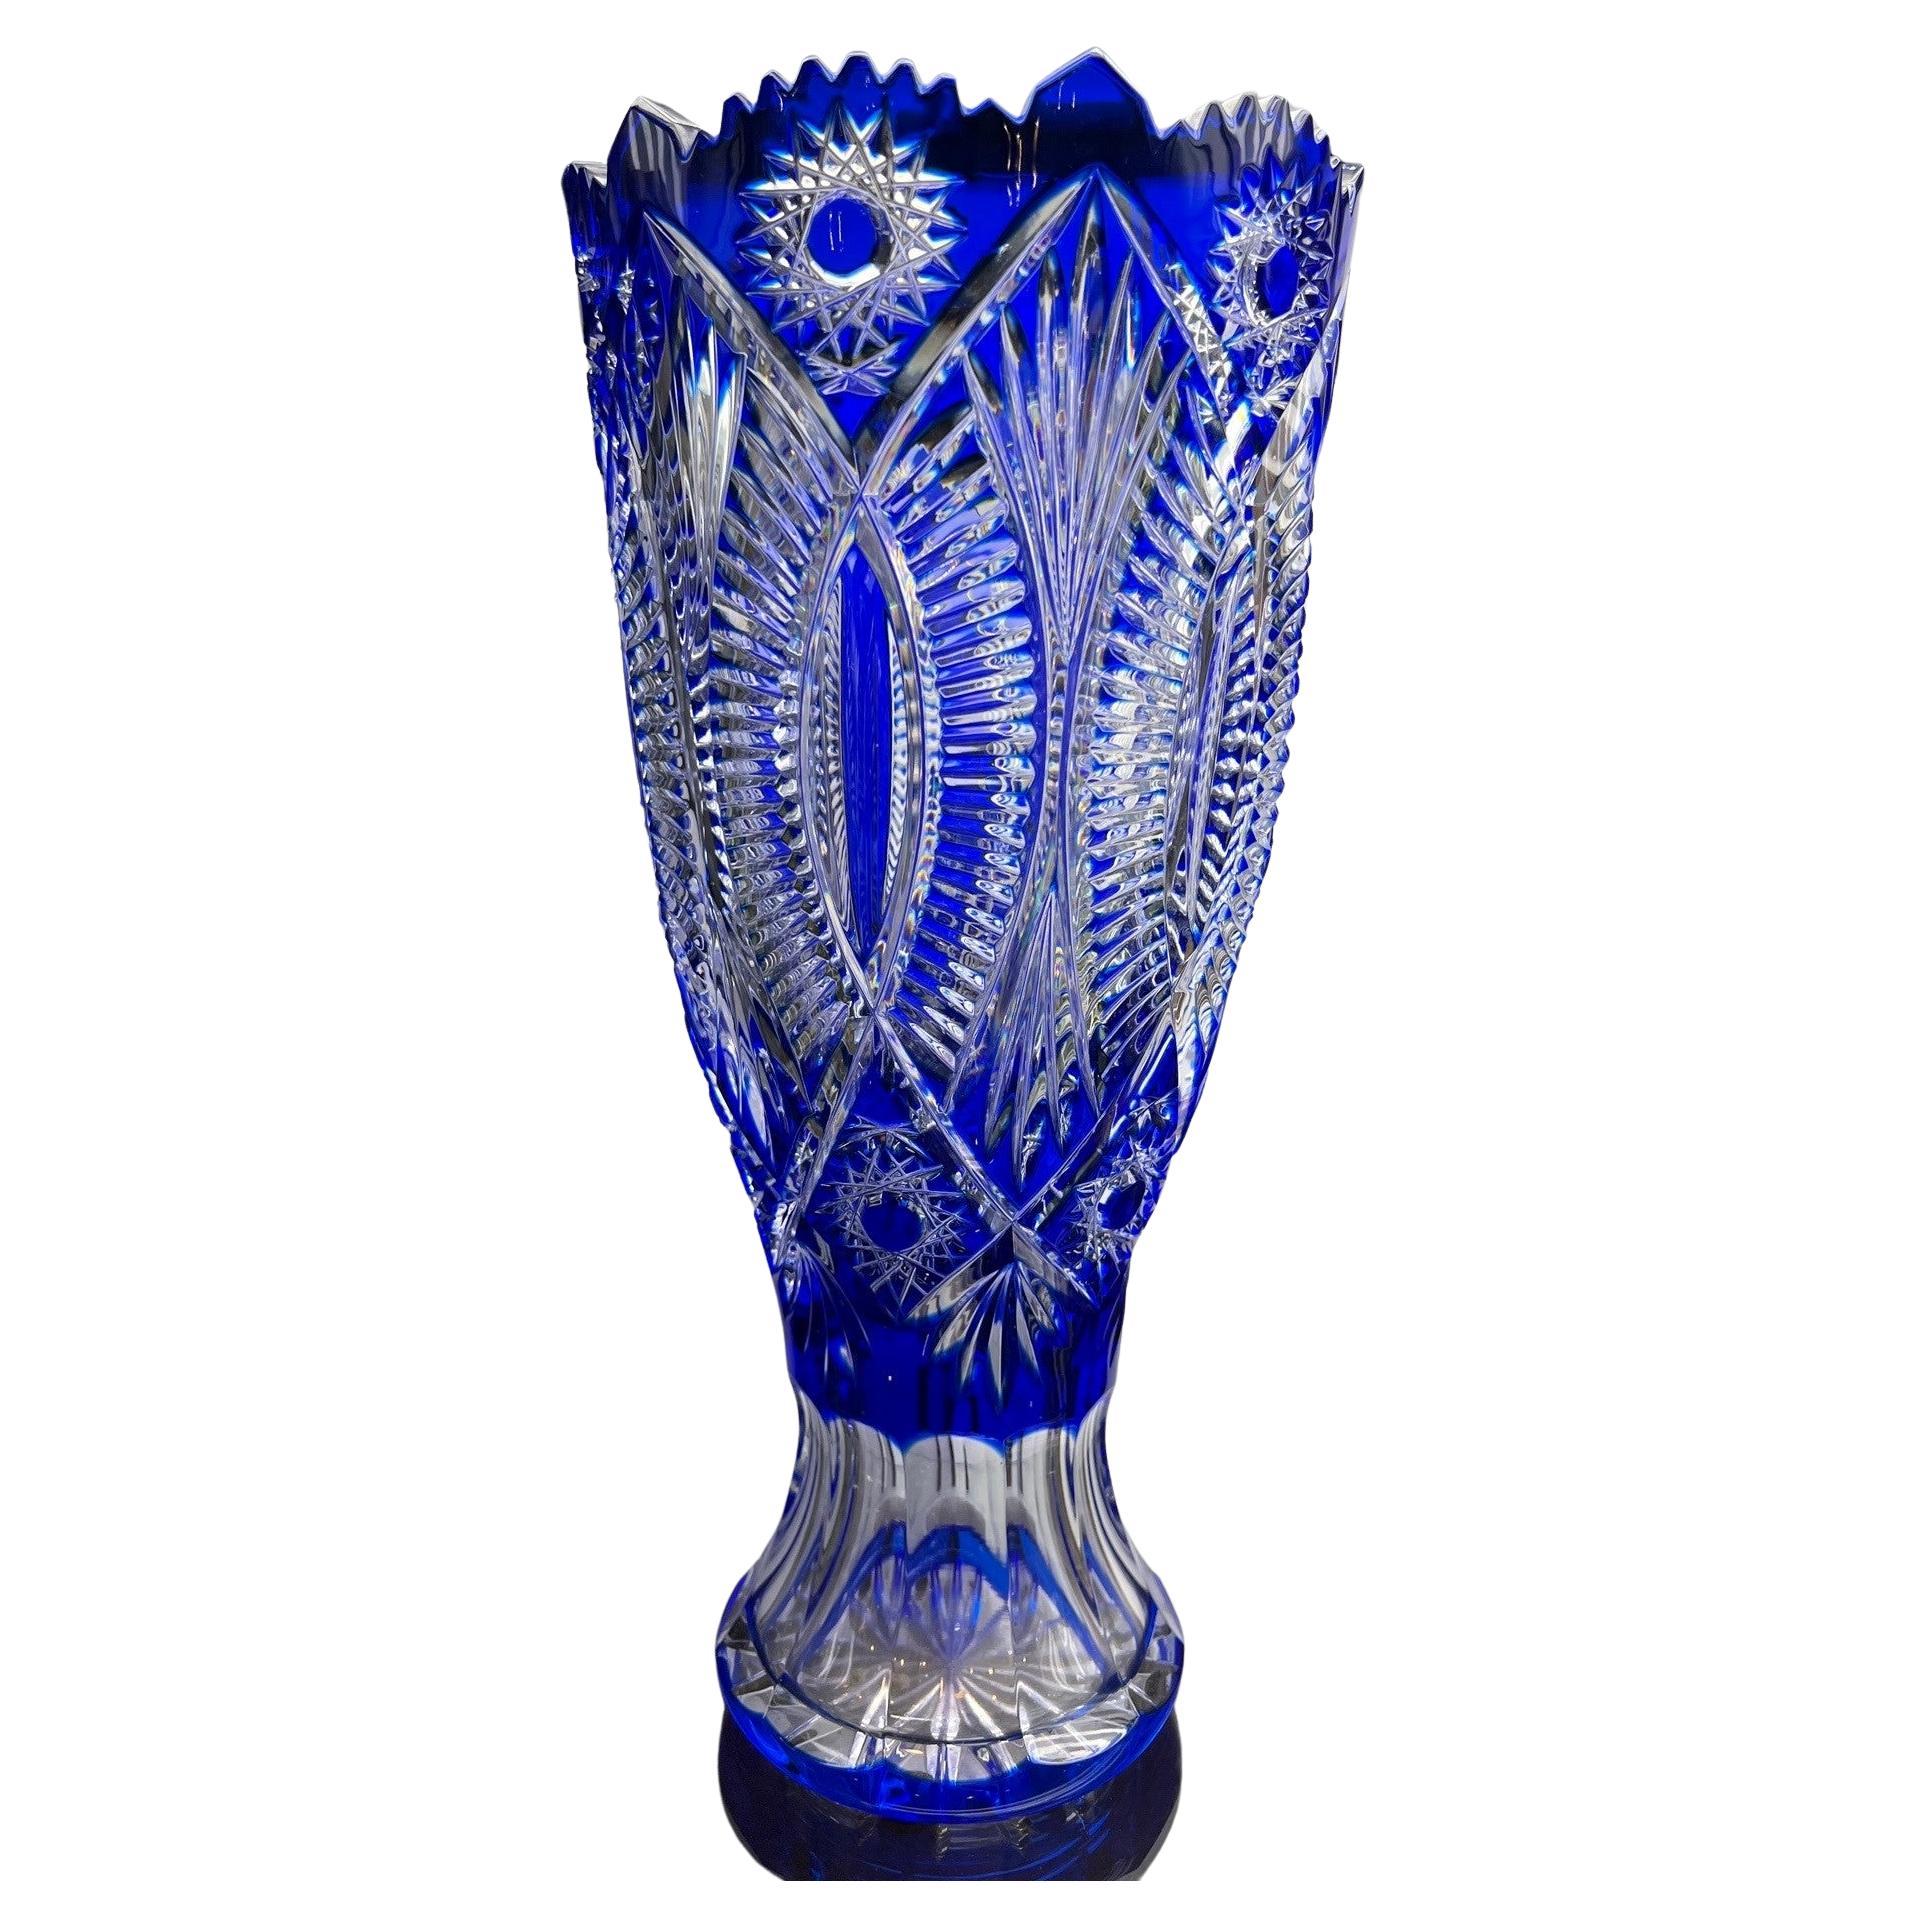  Hand Cut Lead Crystal Cobalt Blue Vase by Caesar Crystal Bohemiae Co. Czech.  